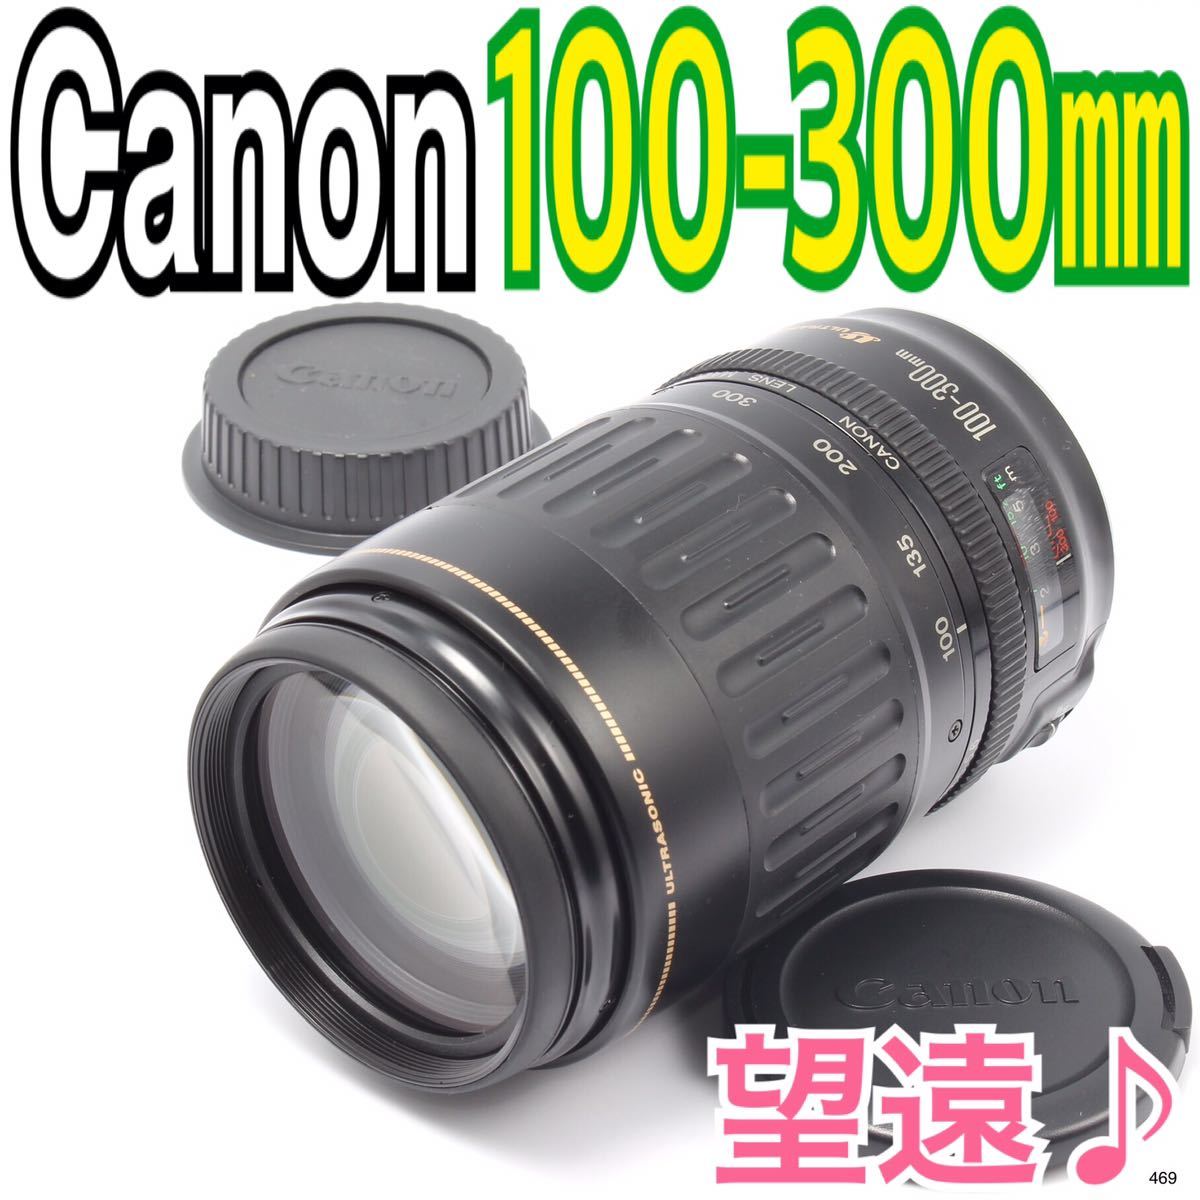 Canon キヤノン 望遠レンズ 100-300mm レンズの向こうの未来!